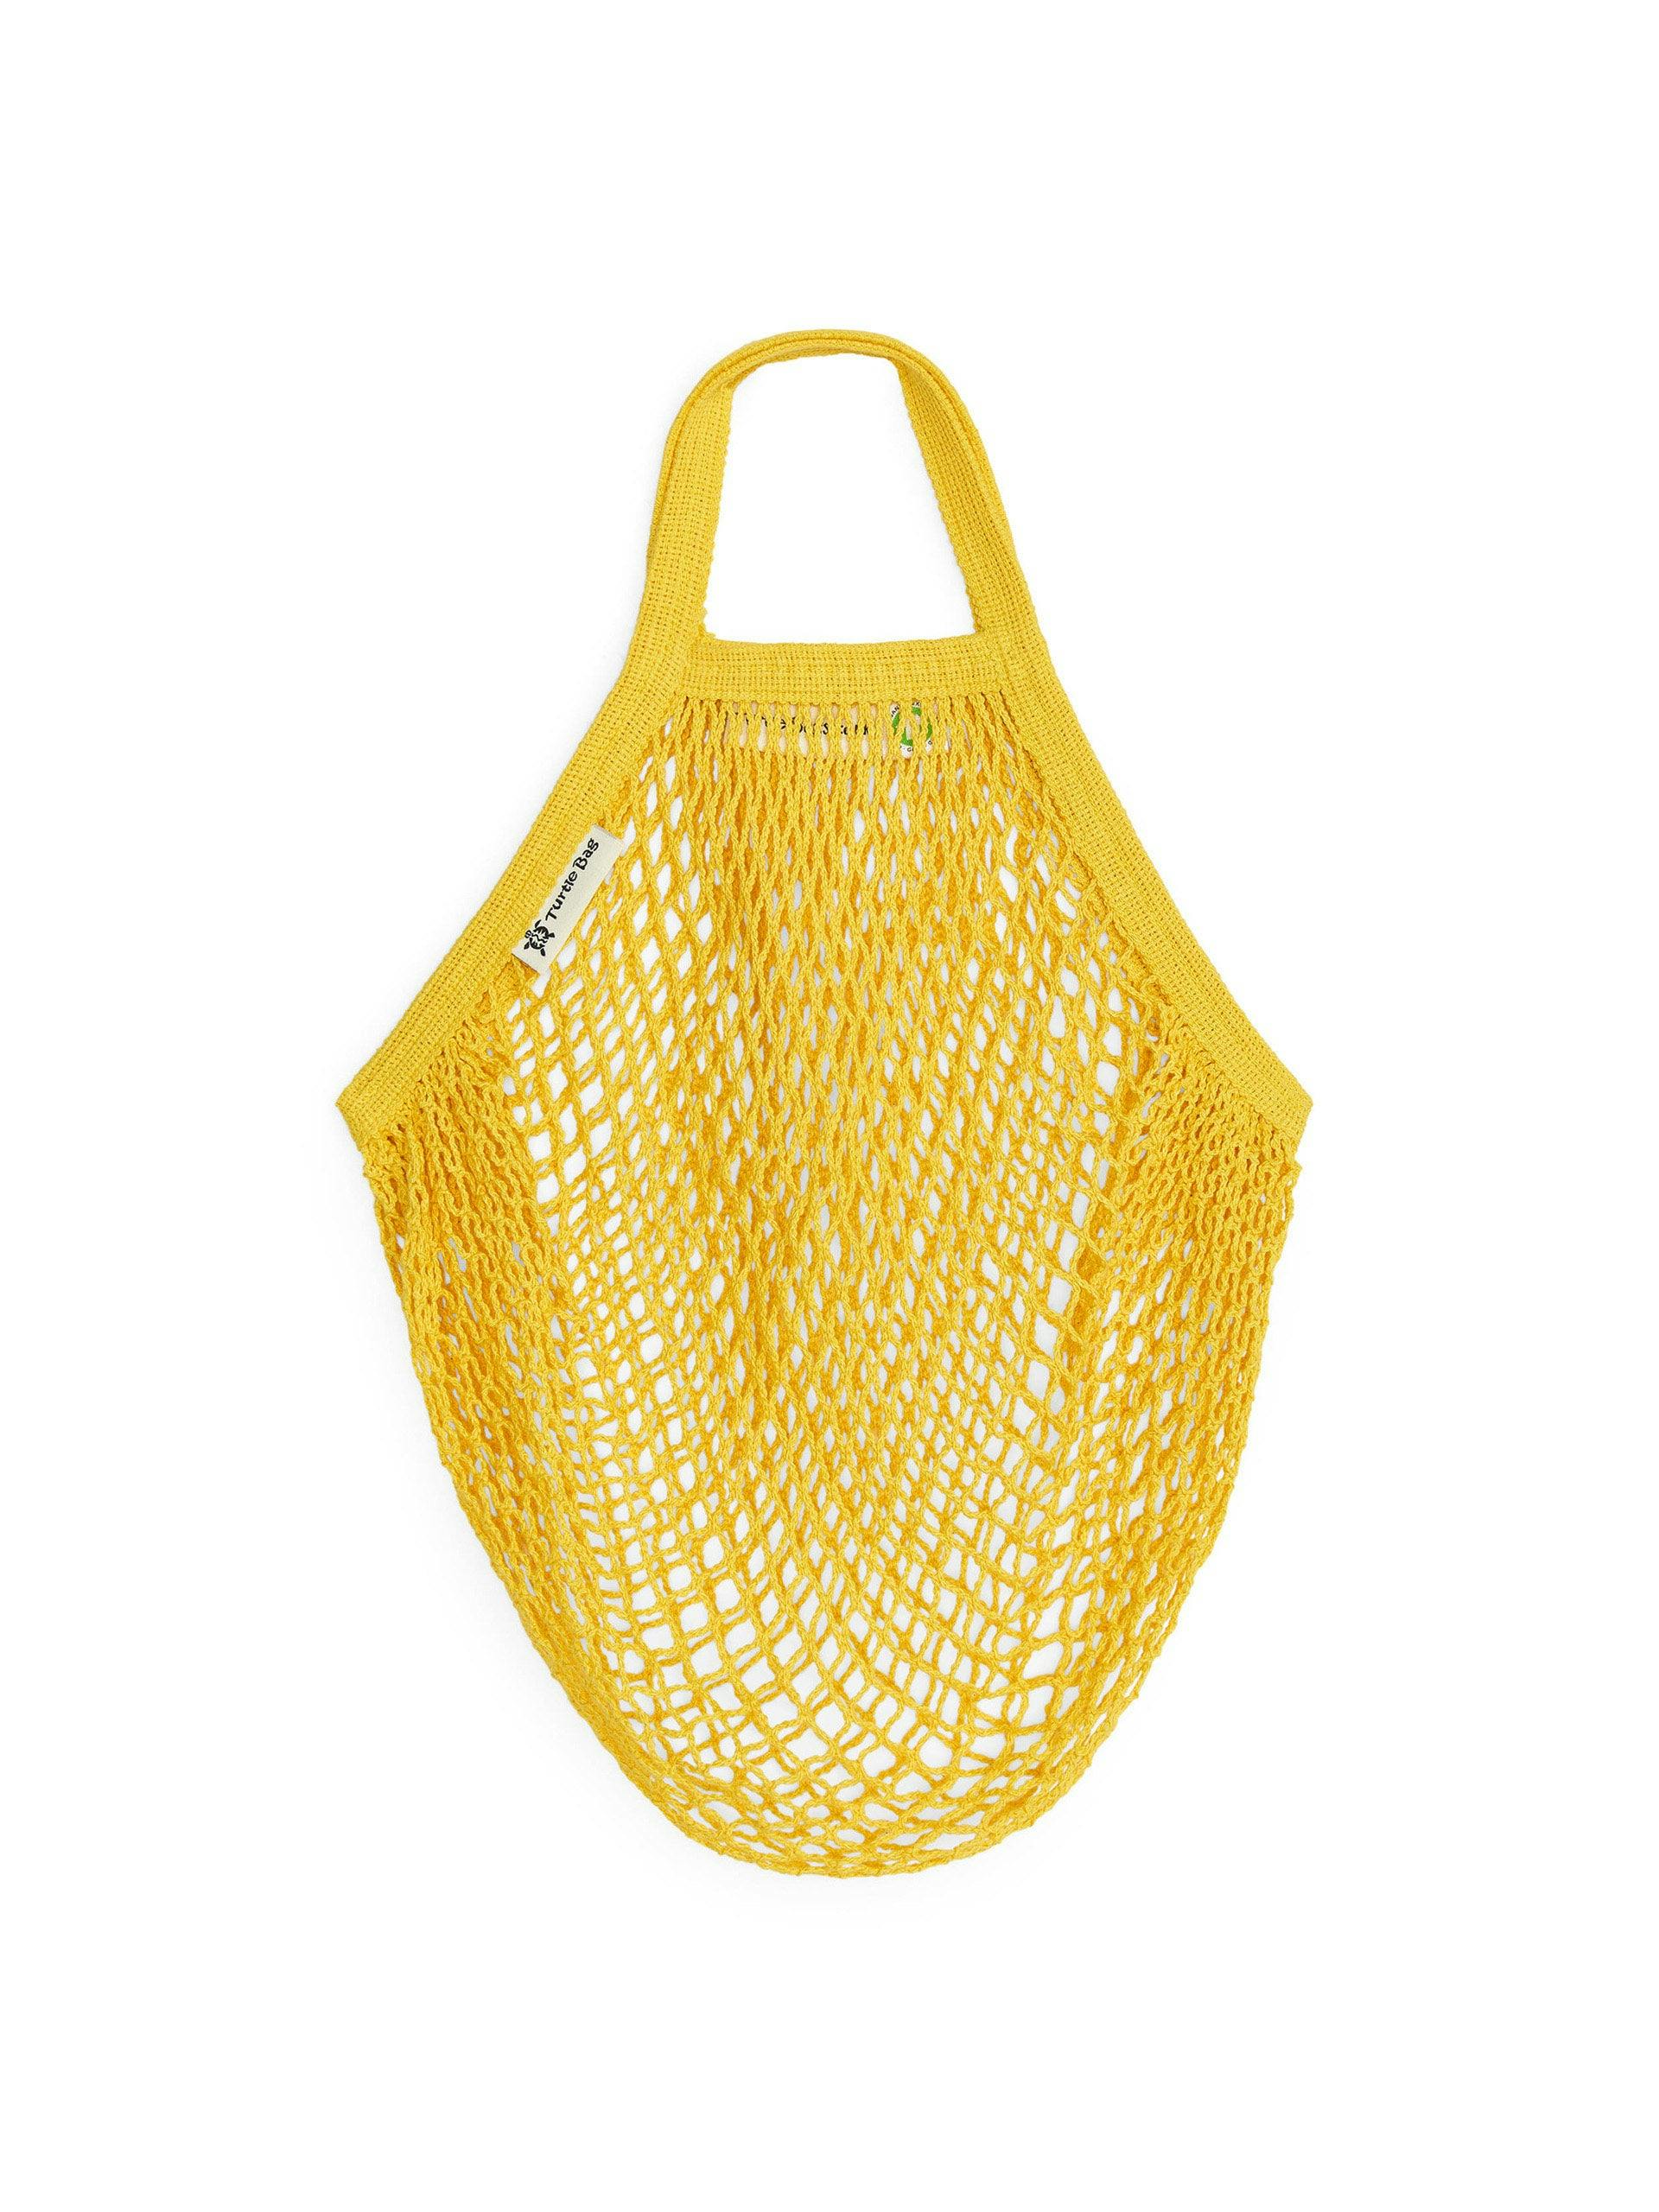 Yellow string bag